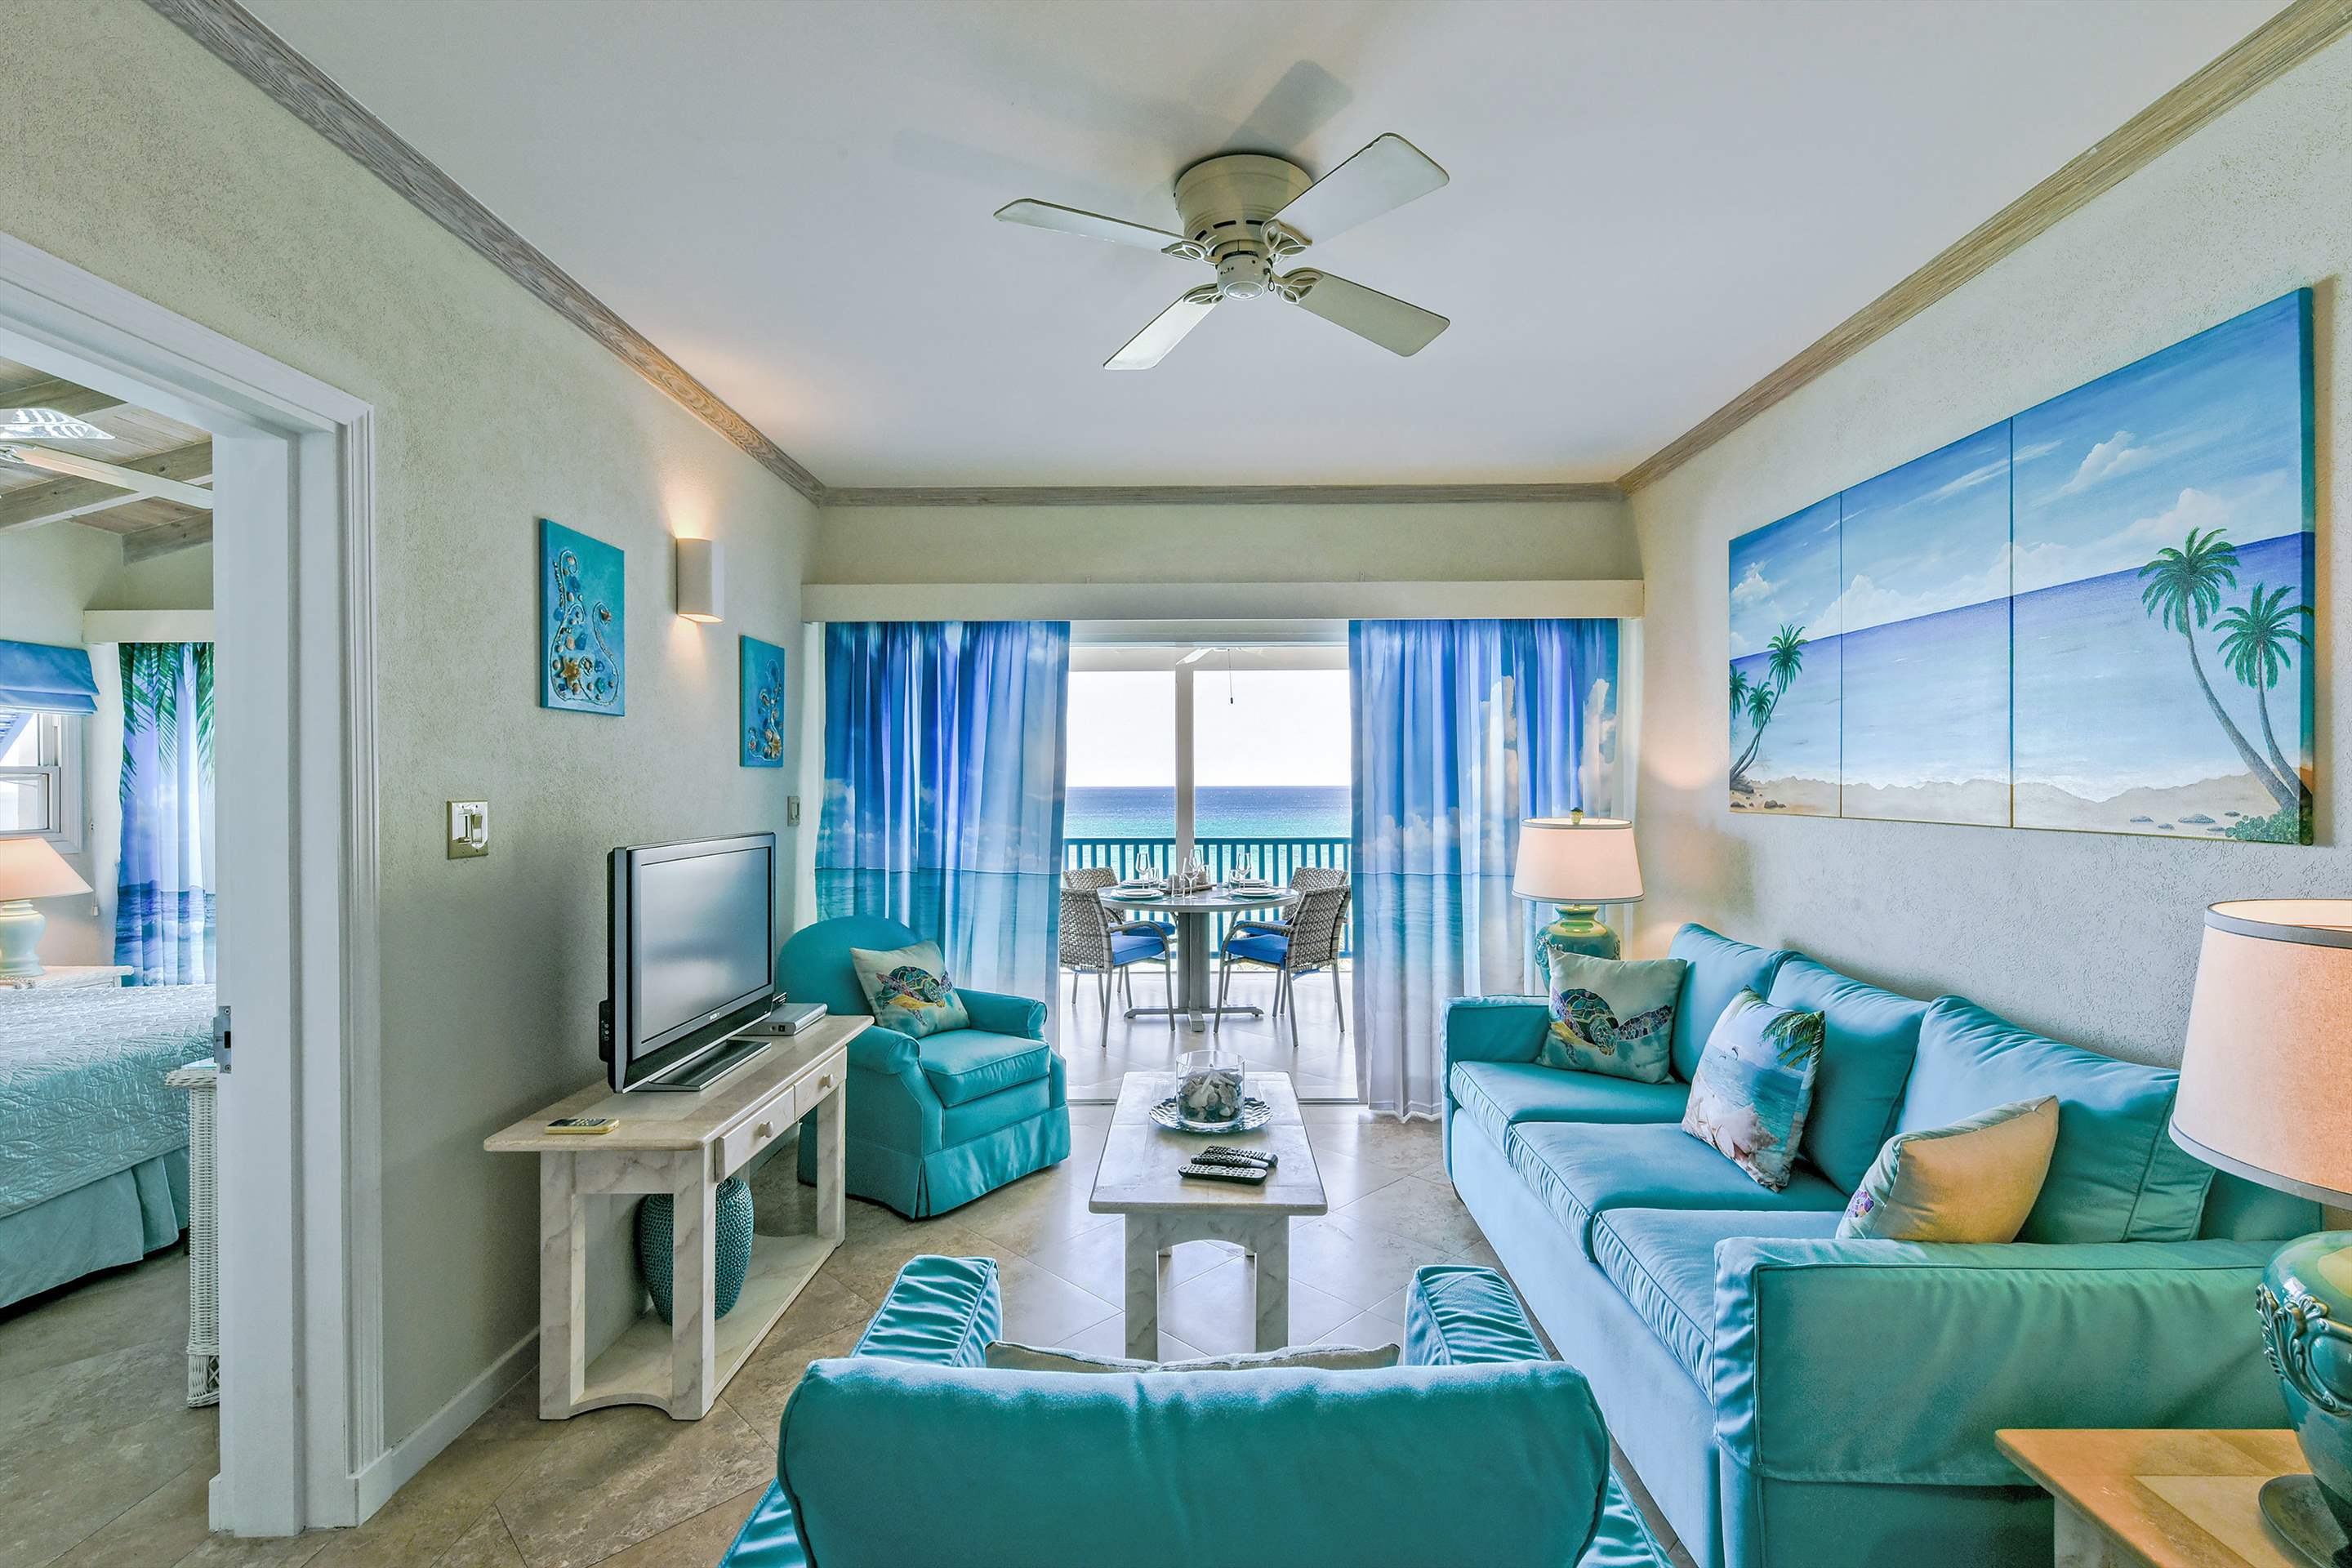 Maxwell Beach Villas 503, 2 bedroom, 2 bedroom villa in St. Lawrence Gap & South Coast, Barbados Photo #4